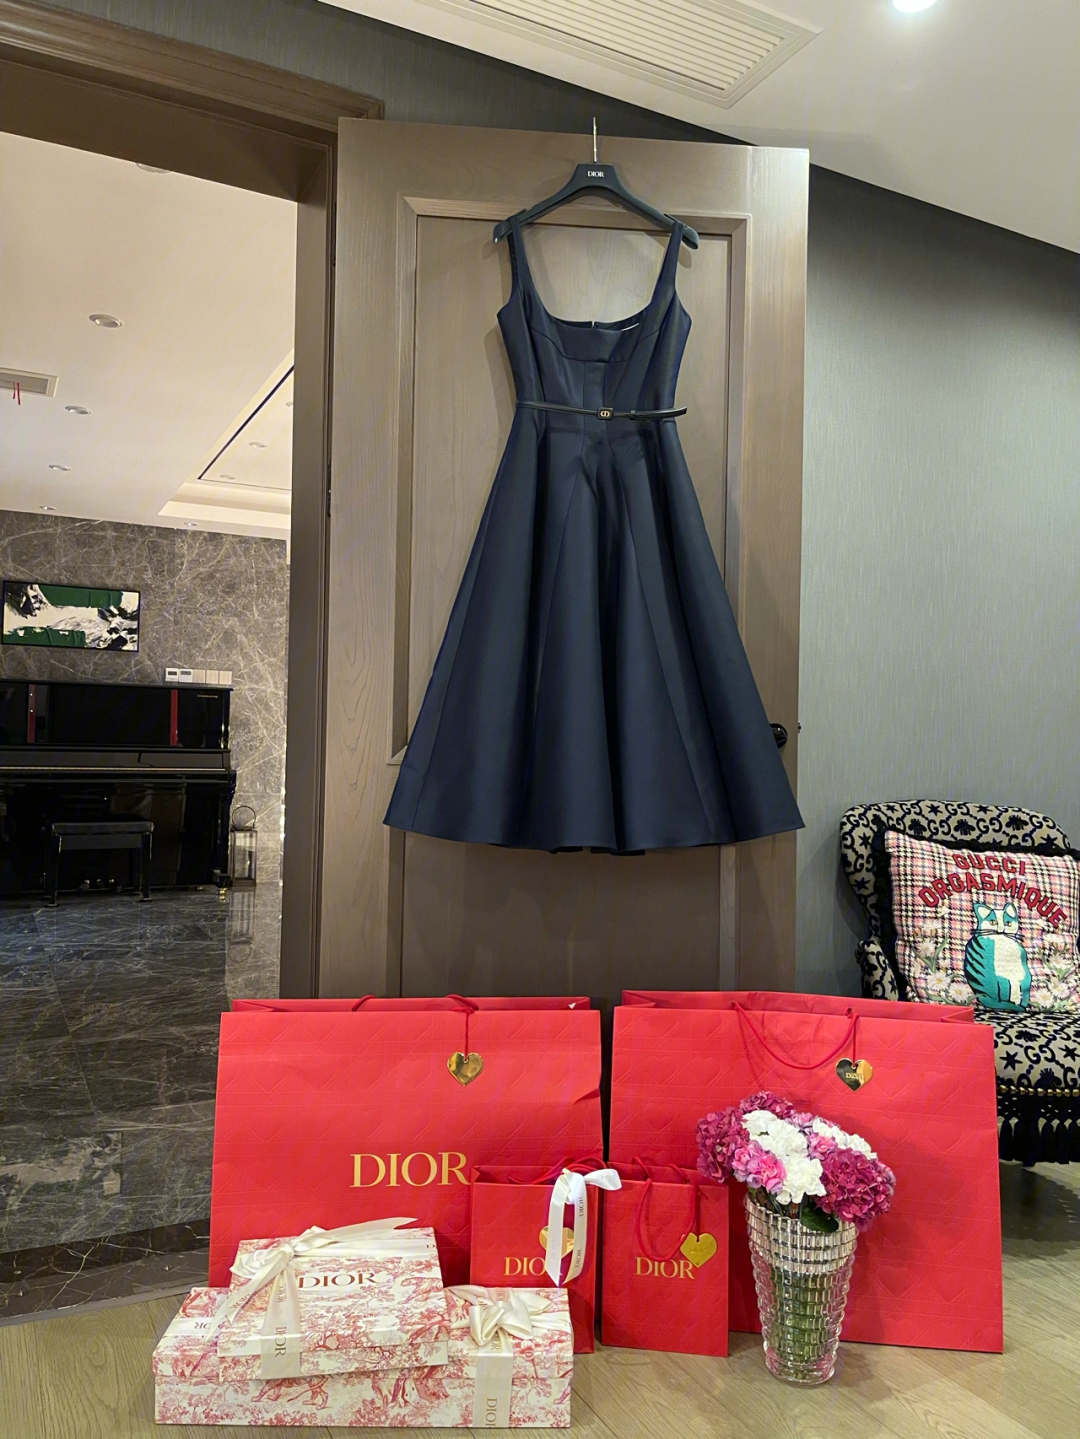 dior王子文同款小黑裙七夕的dior包装